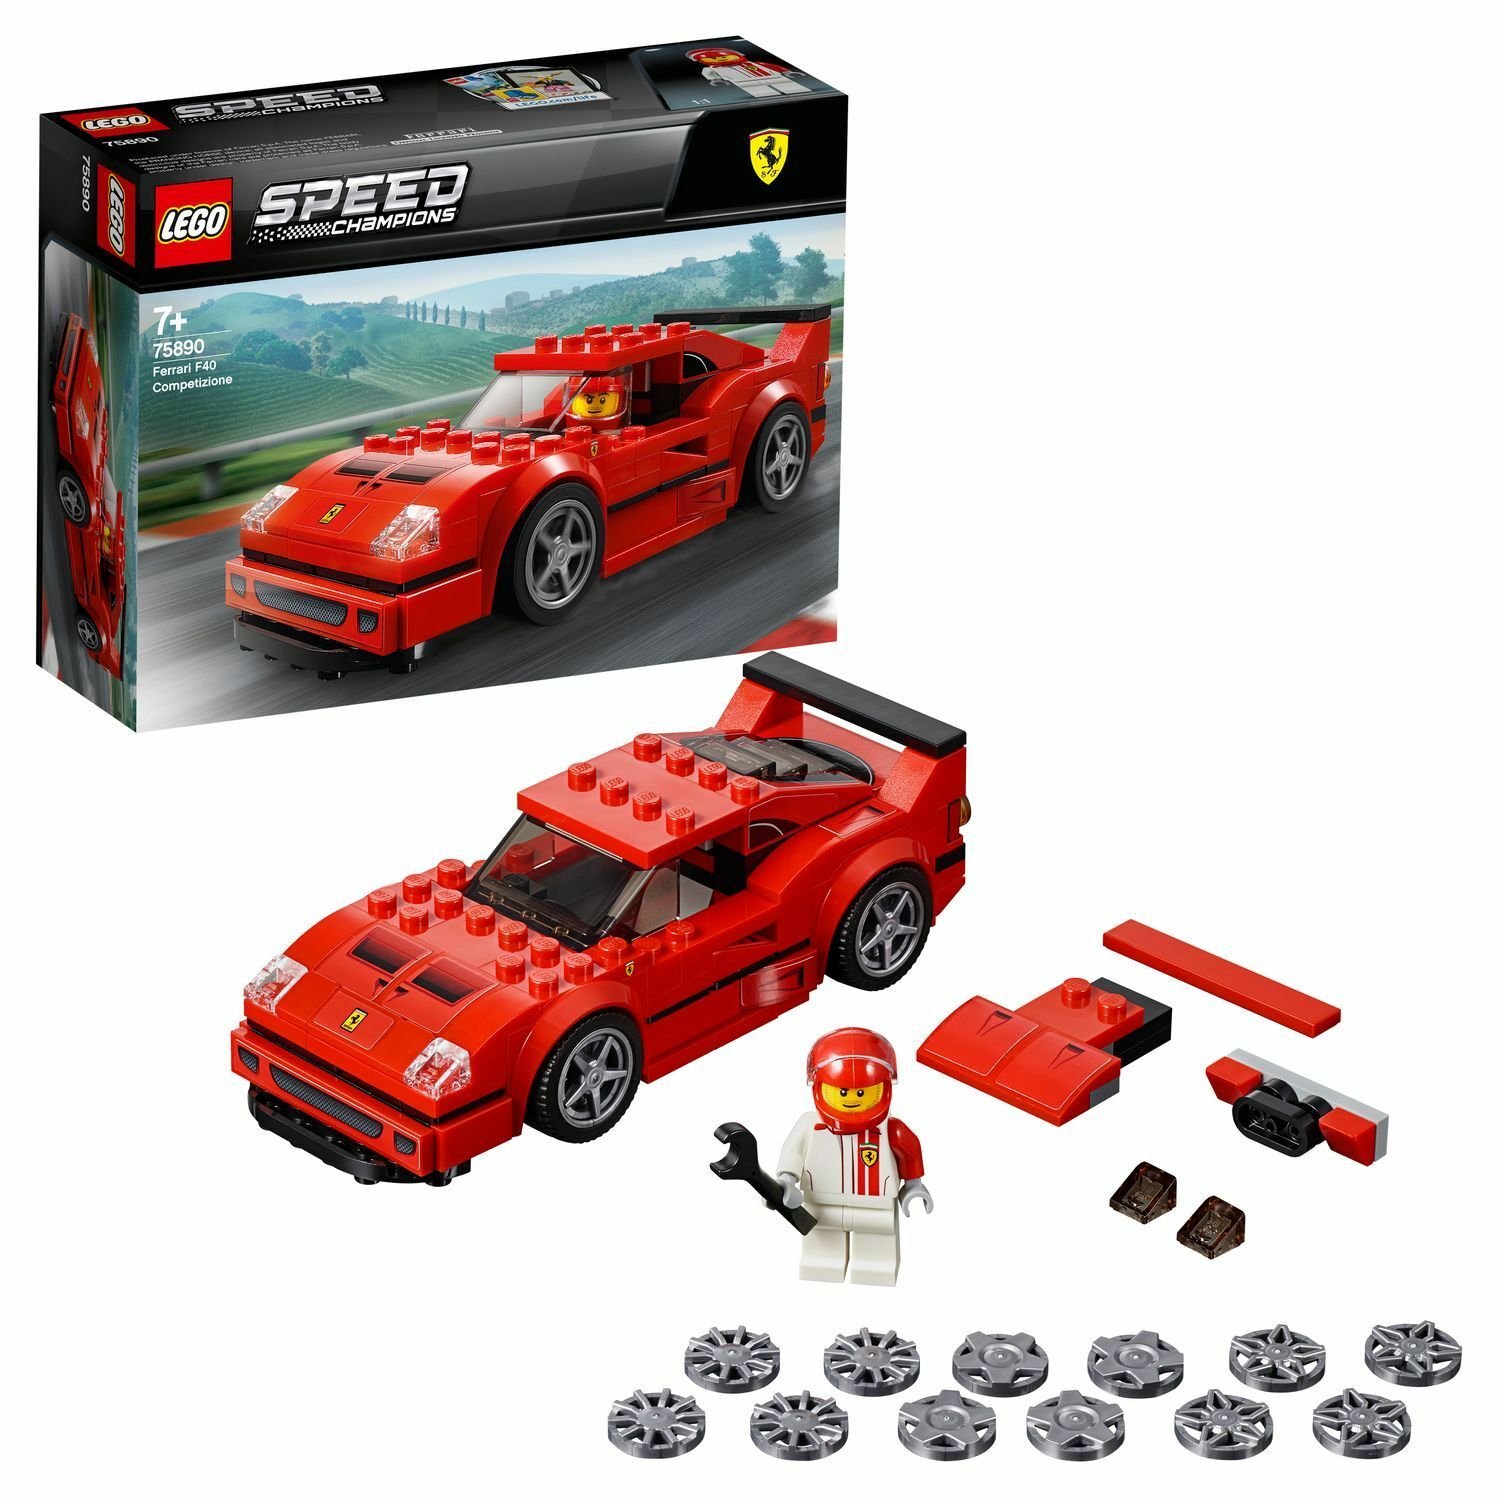 Конструктор LEGO Speed Champions Автомобиль Ferrari F40 Competizione, 75890 конструктор lego polybag speed champions mclaren formula 1 30683 58 дет